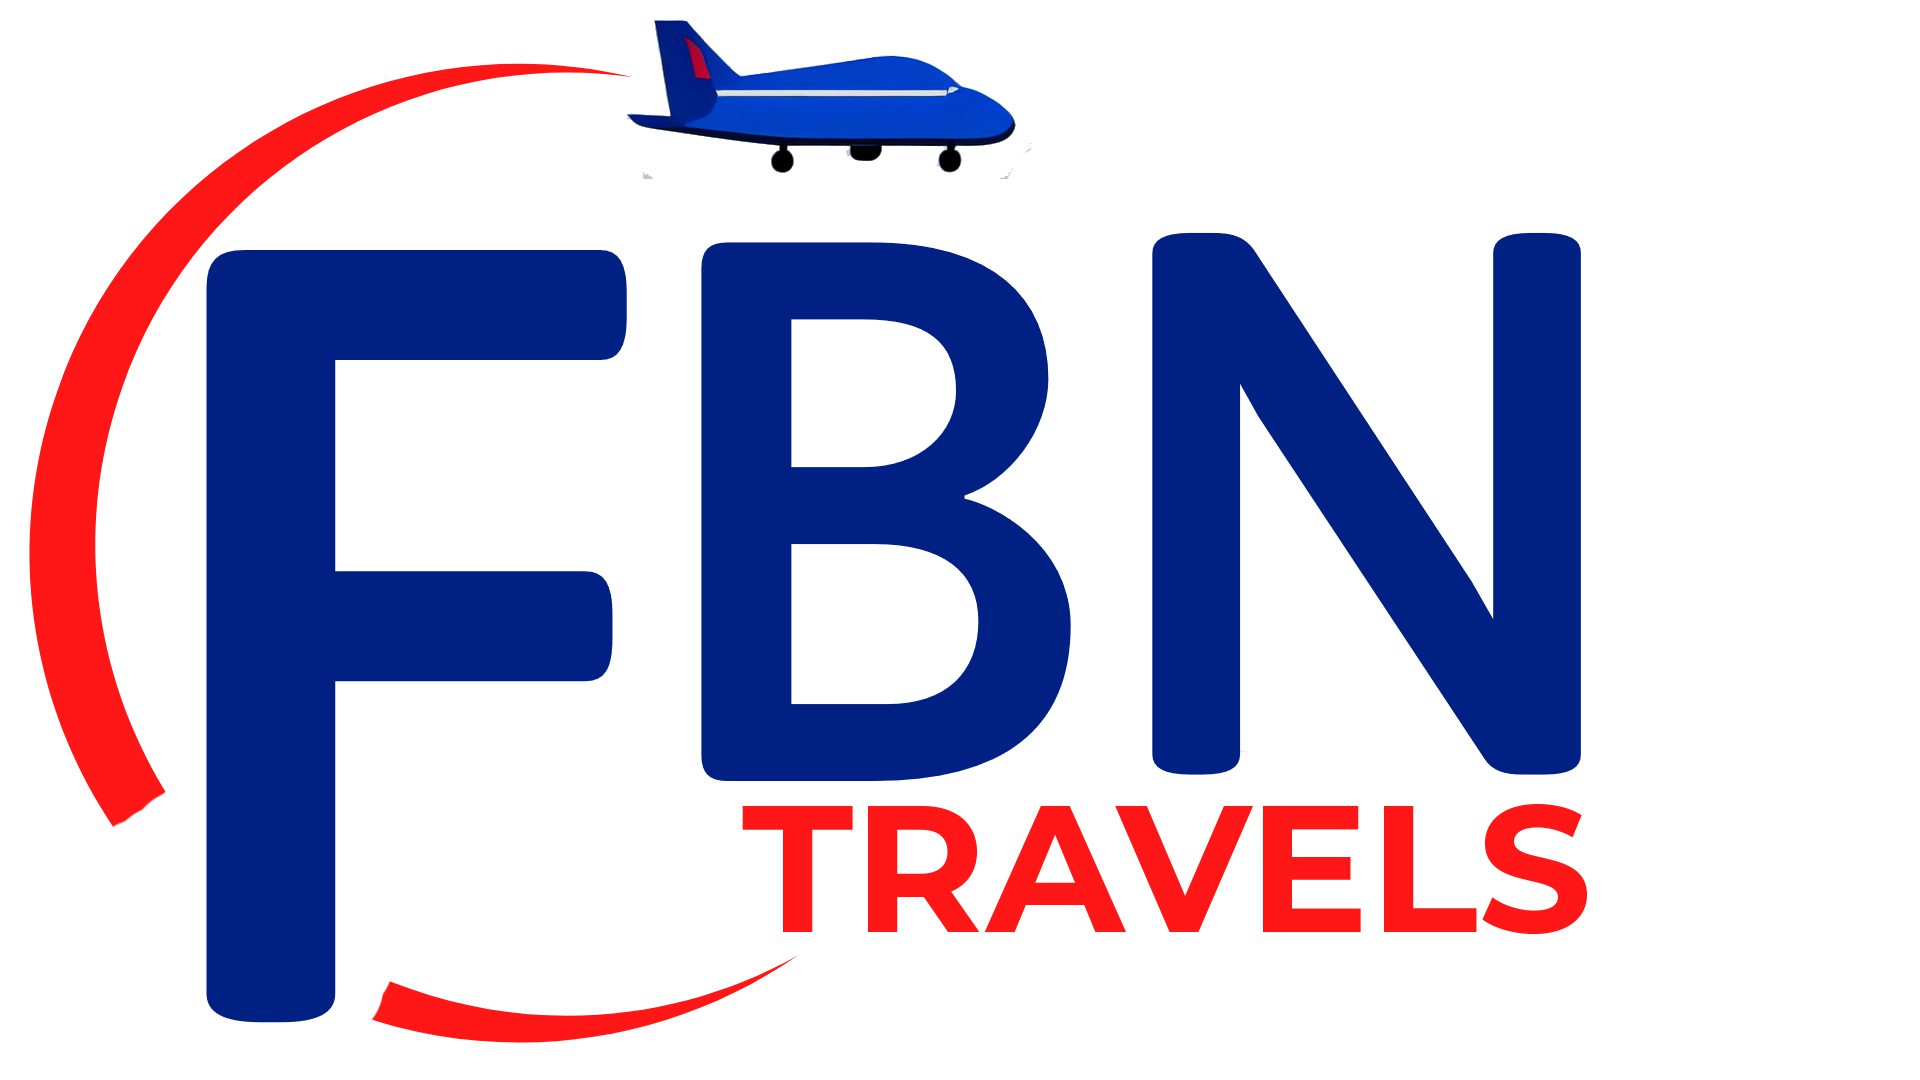 FBN Travels